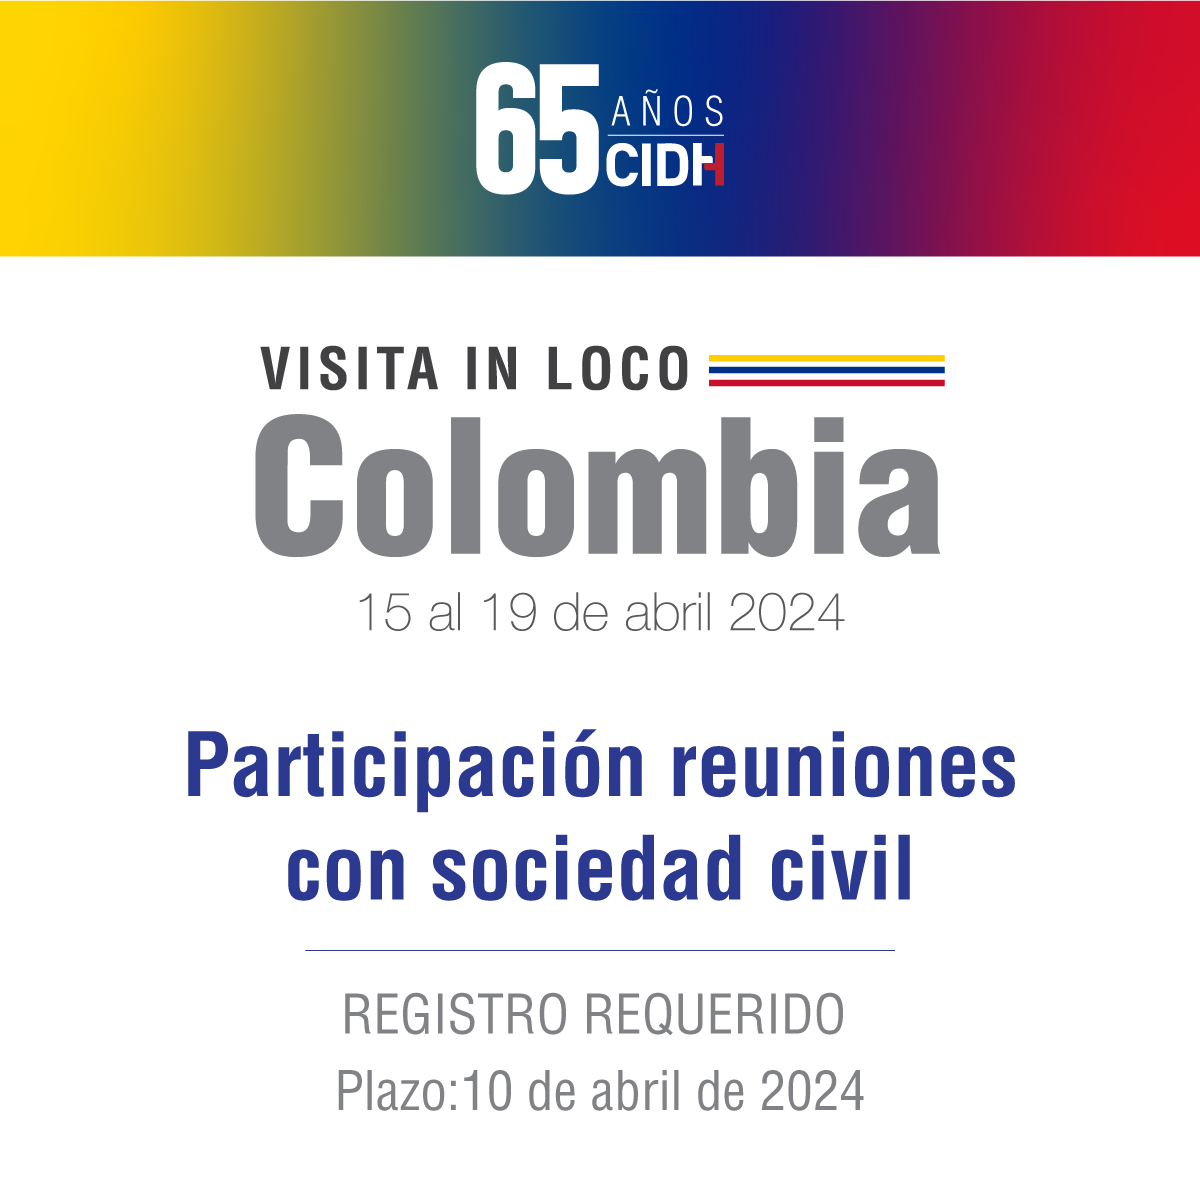 En el marco de la visita in loco a #Colombia, se informa a las organizaciones de la sociedad civil interesadas en participar en las reuniones con la #CIDH, que deben registrarse previamente. #CIDHEnColombia Plazo: miércoles 10 de abril de 2024. Registro e información:…